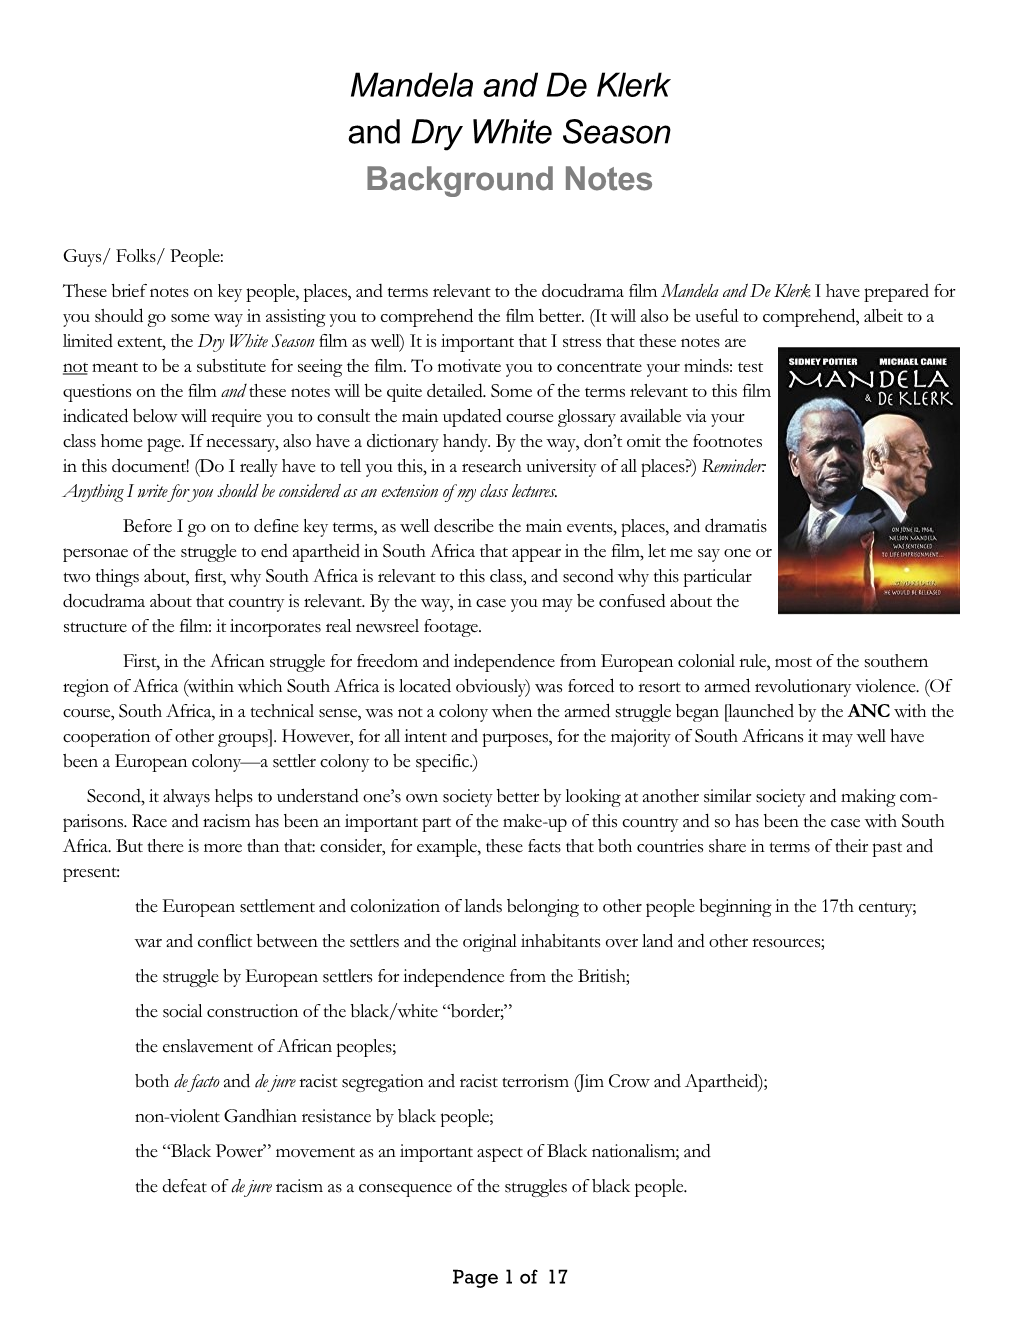 Mandela and De Klerk and Dry White Season Background Notes